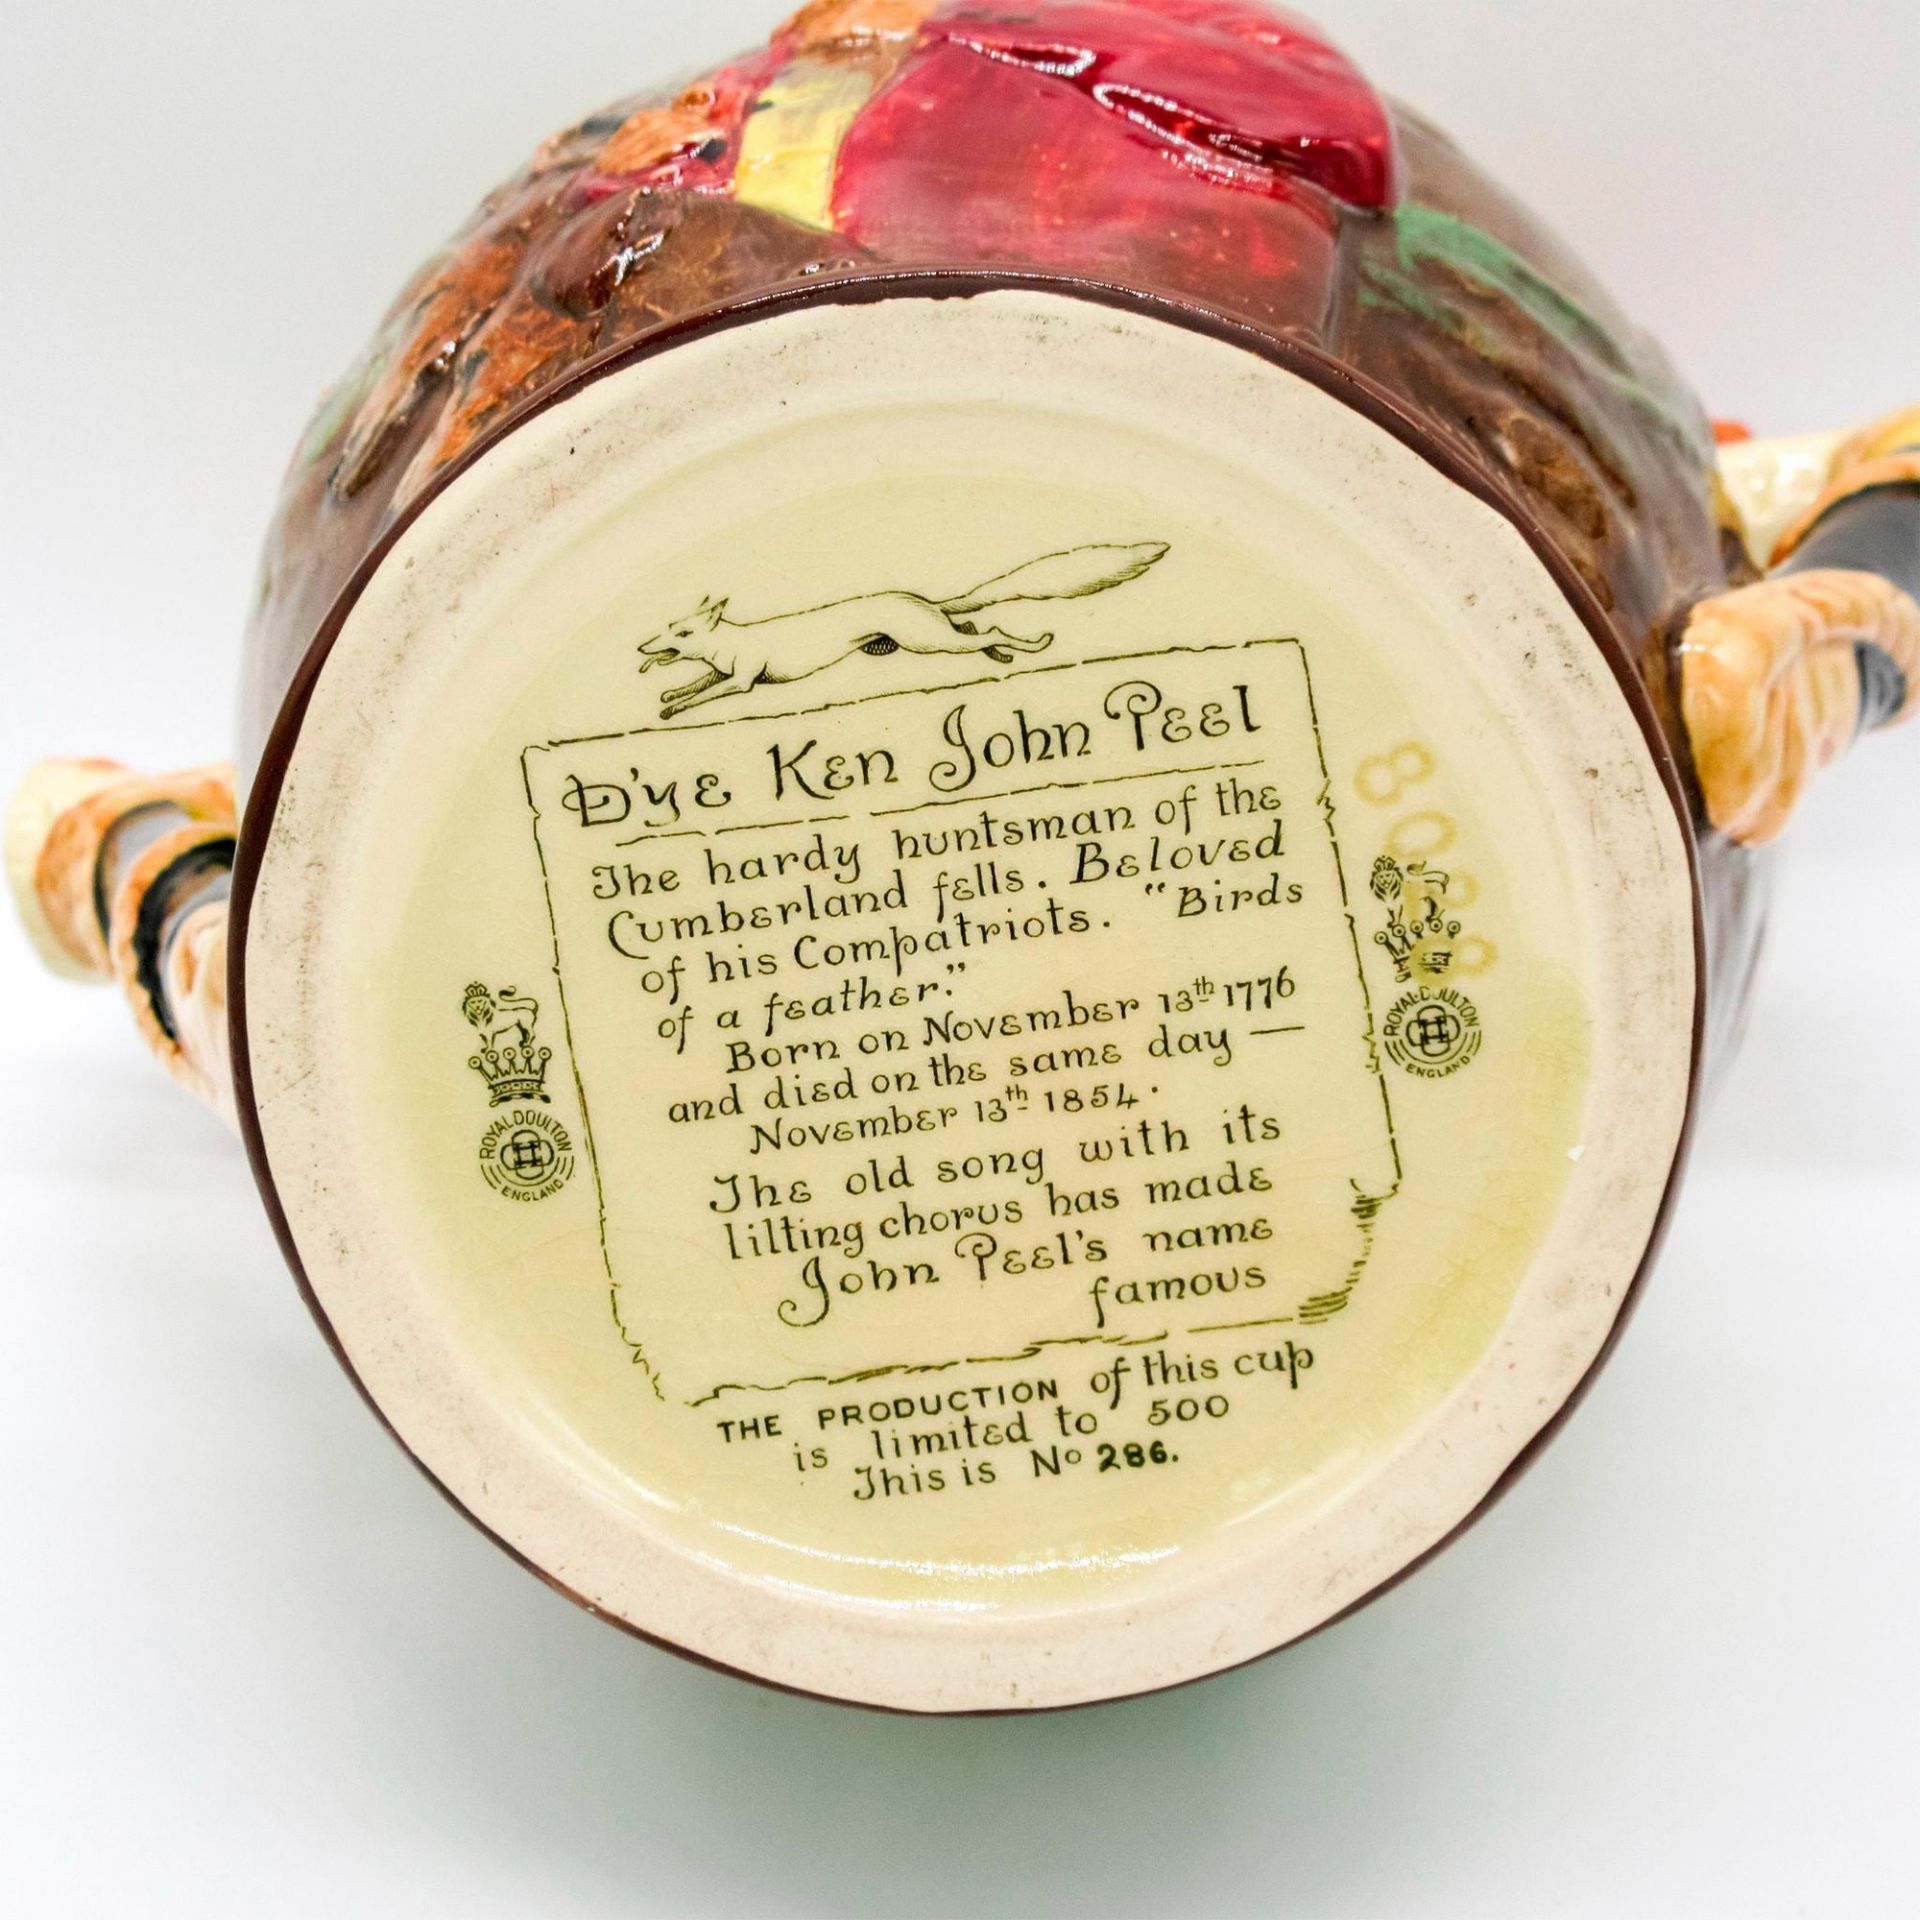 Antique Royal Doulton Loving Cup, Dye Ken John Peel - Image 3 of 3